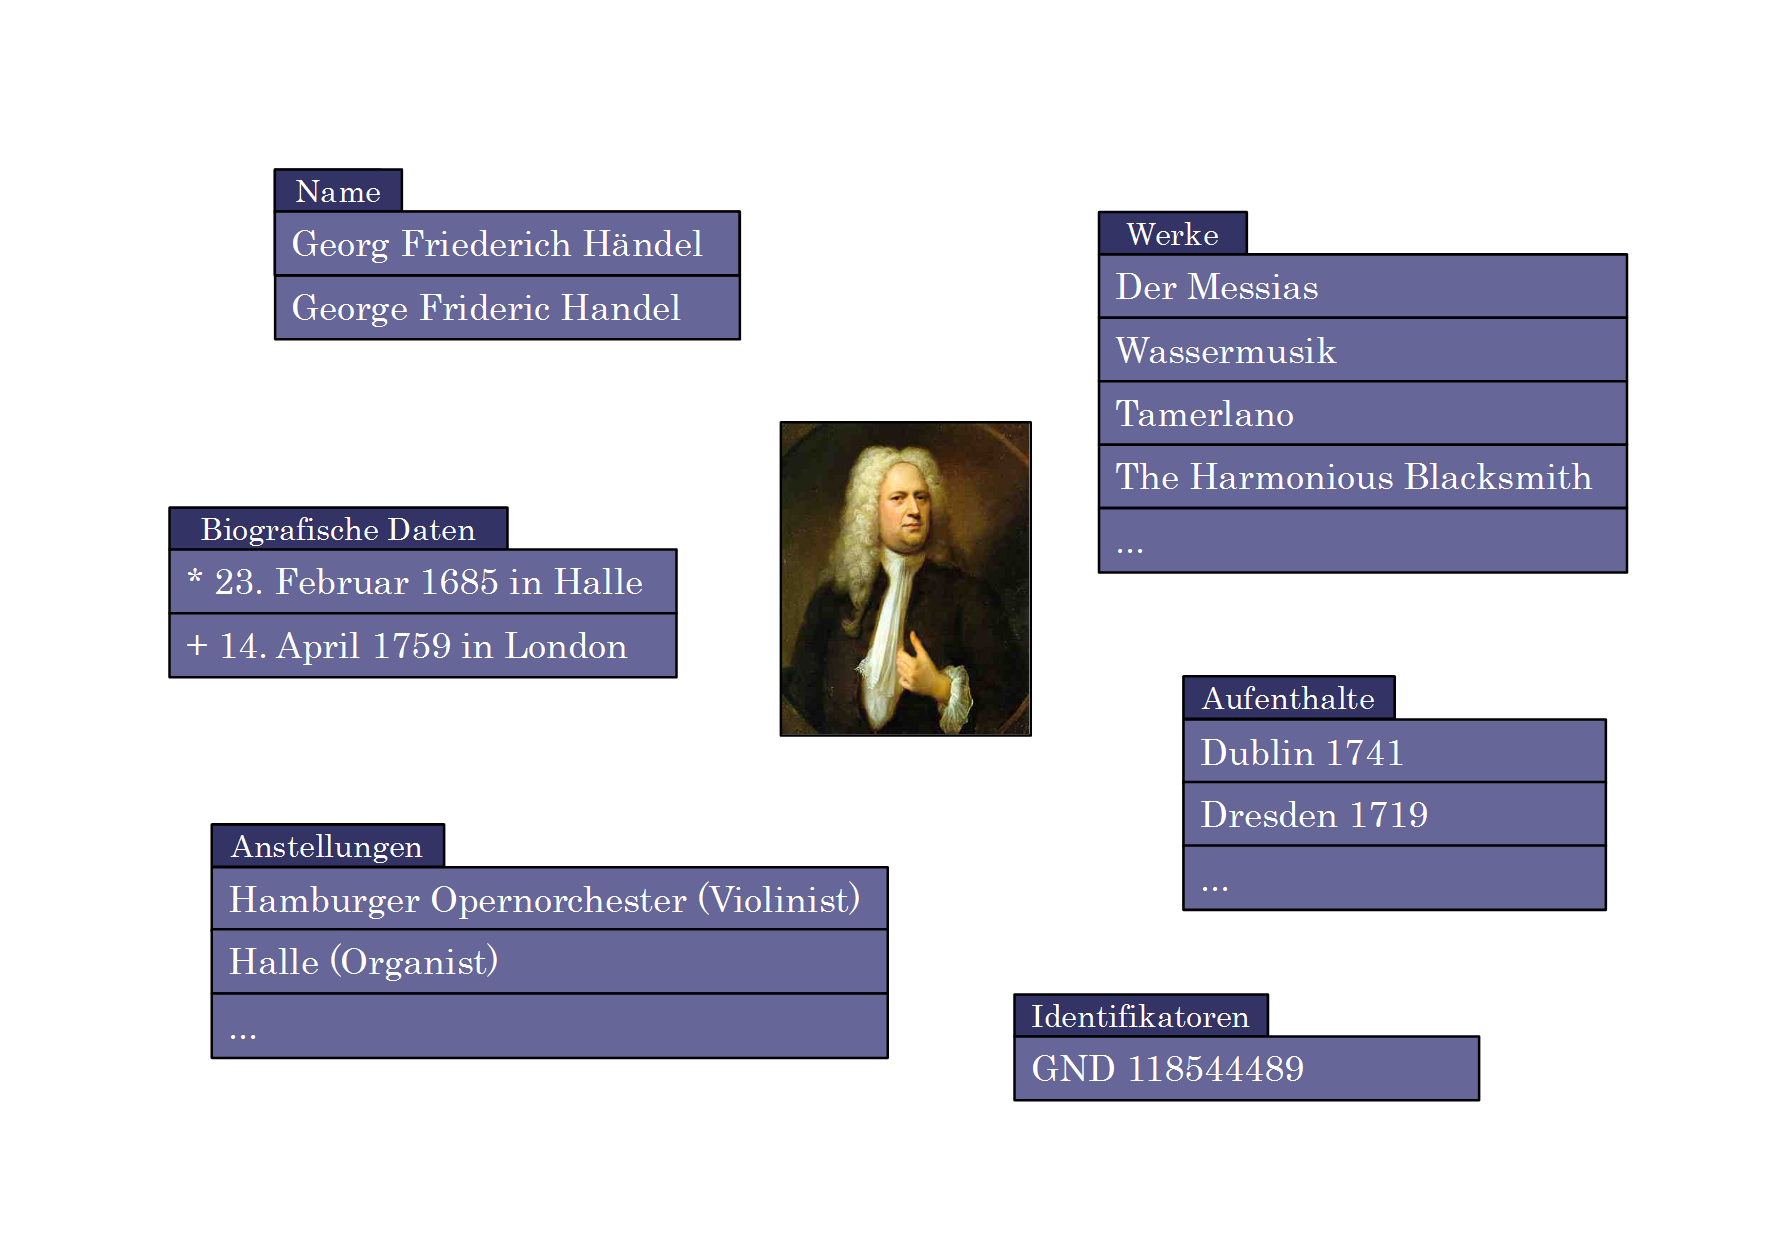 Abb. 2: Beispielaspekte zu Georg Friedrich Händel. In den dunkel schattierten
                    Reitern steht die jeweilige Kategorie. Grafik: Torsten Roeder, 2014.